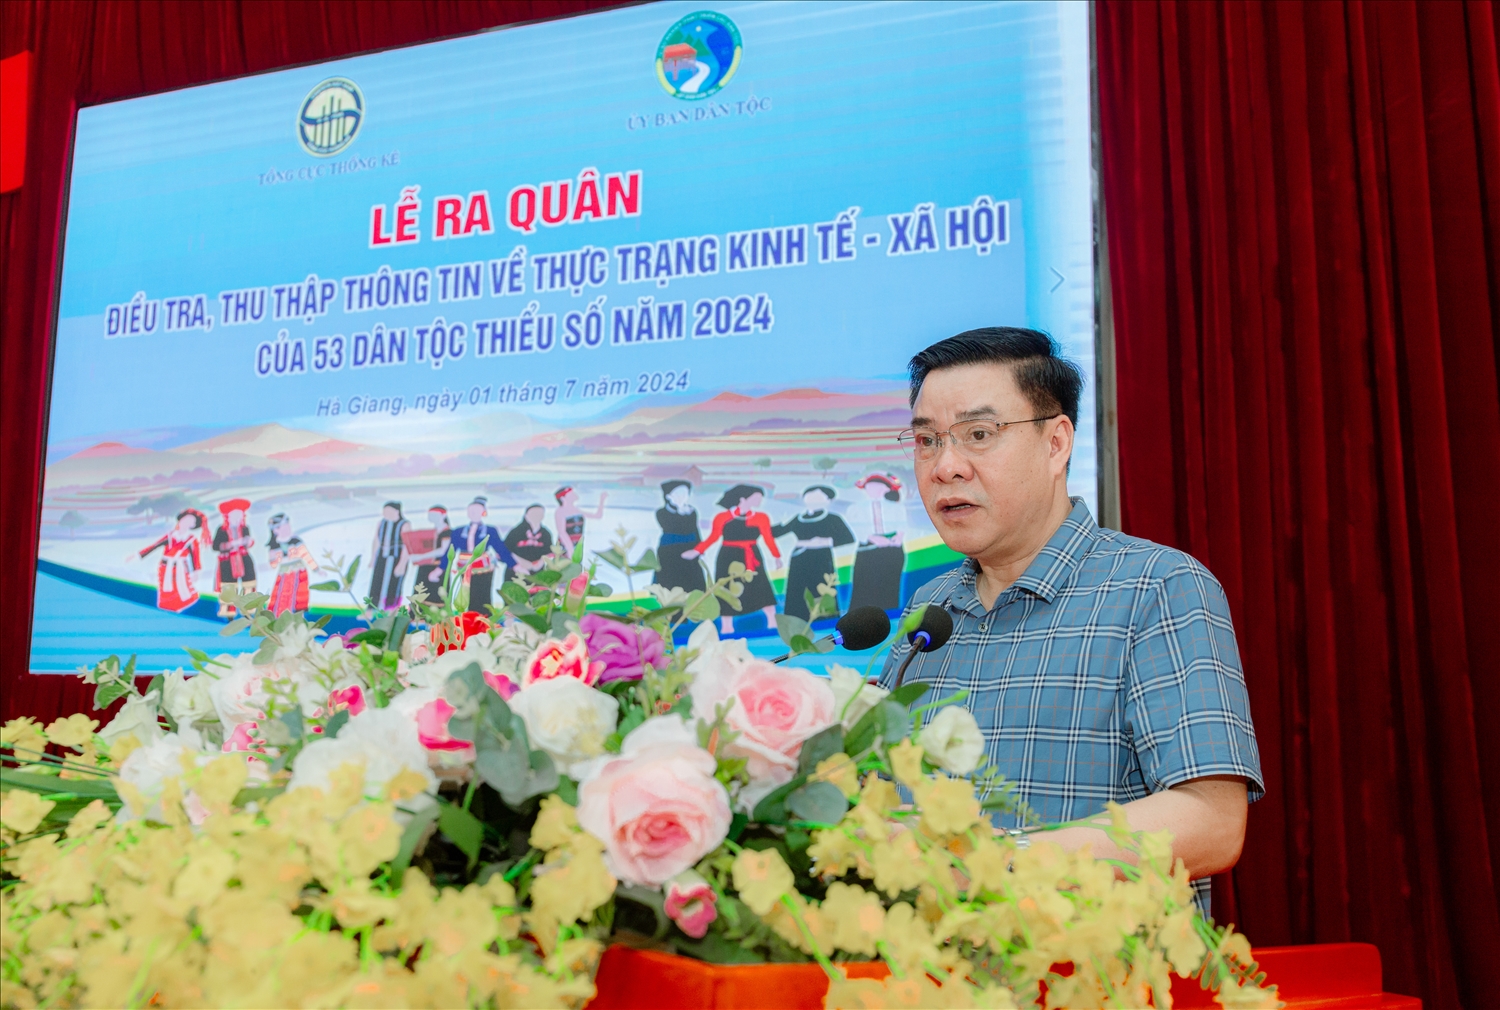 Phó Chủ tịch Thường trực UBND tỉnh Hà Giang Hoàng Gia Long phát biểu tại buổi Lễ.